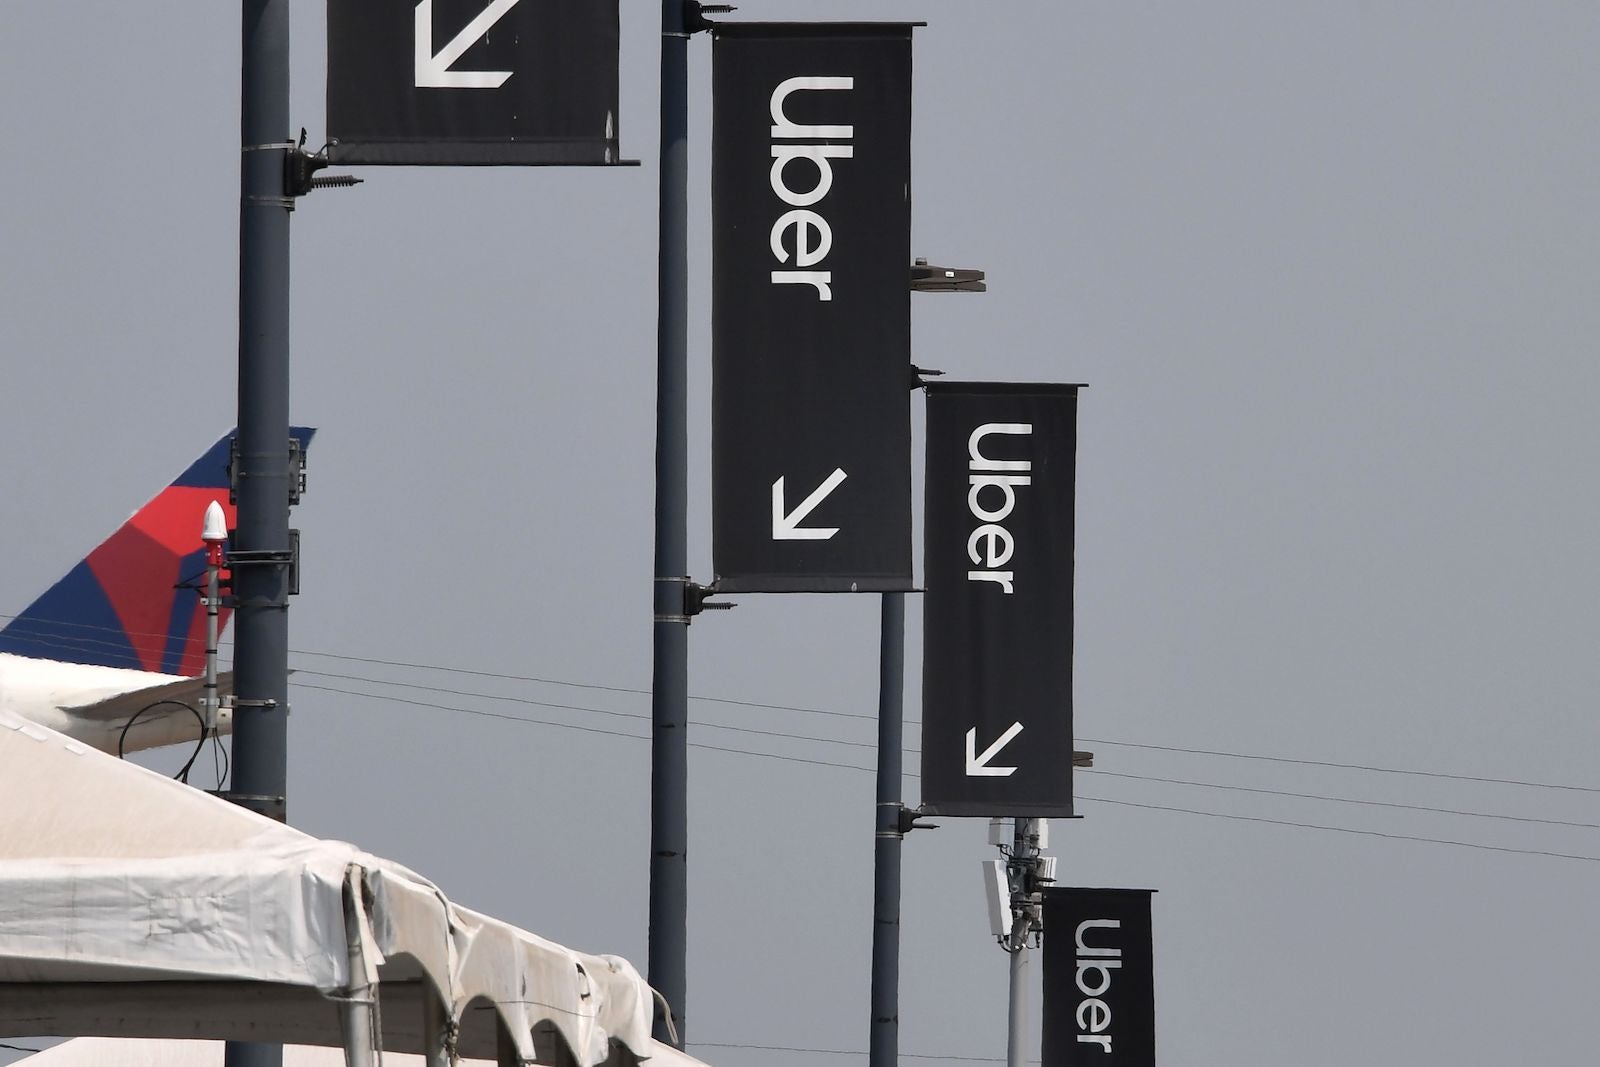 Uber signs at LAX